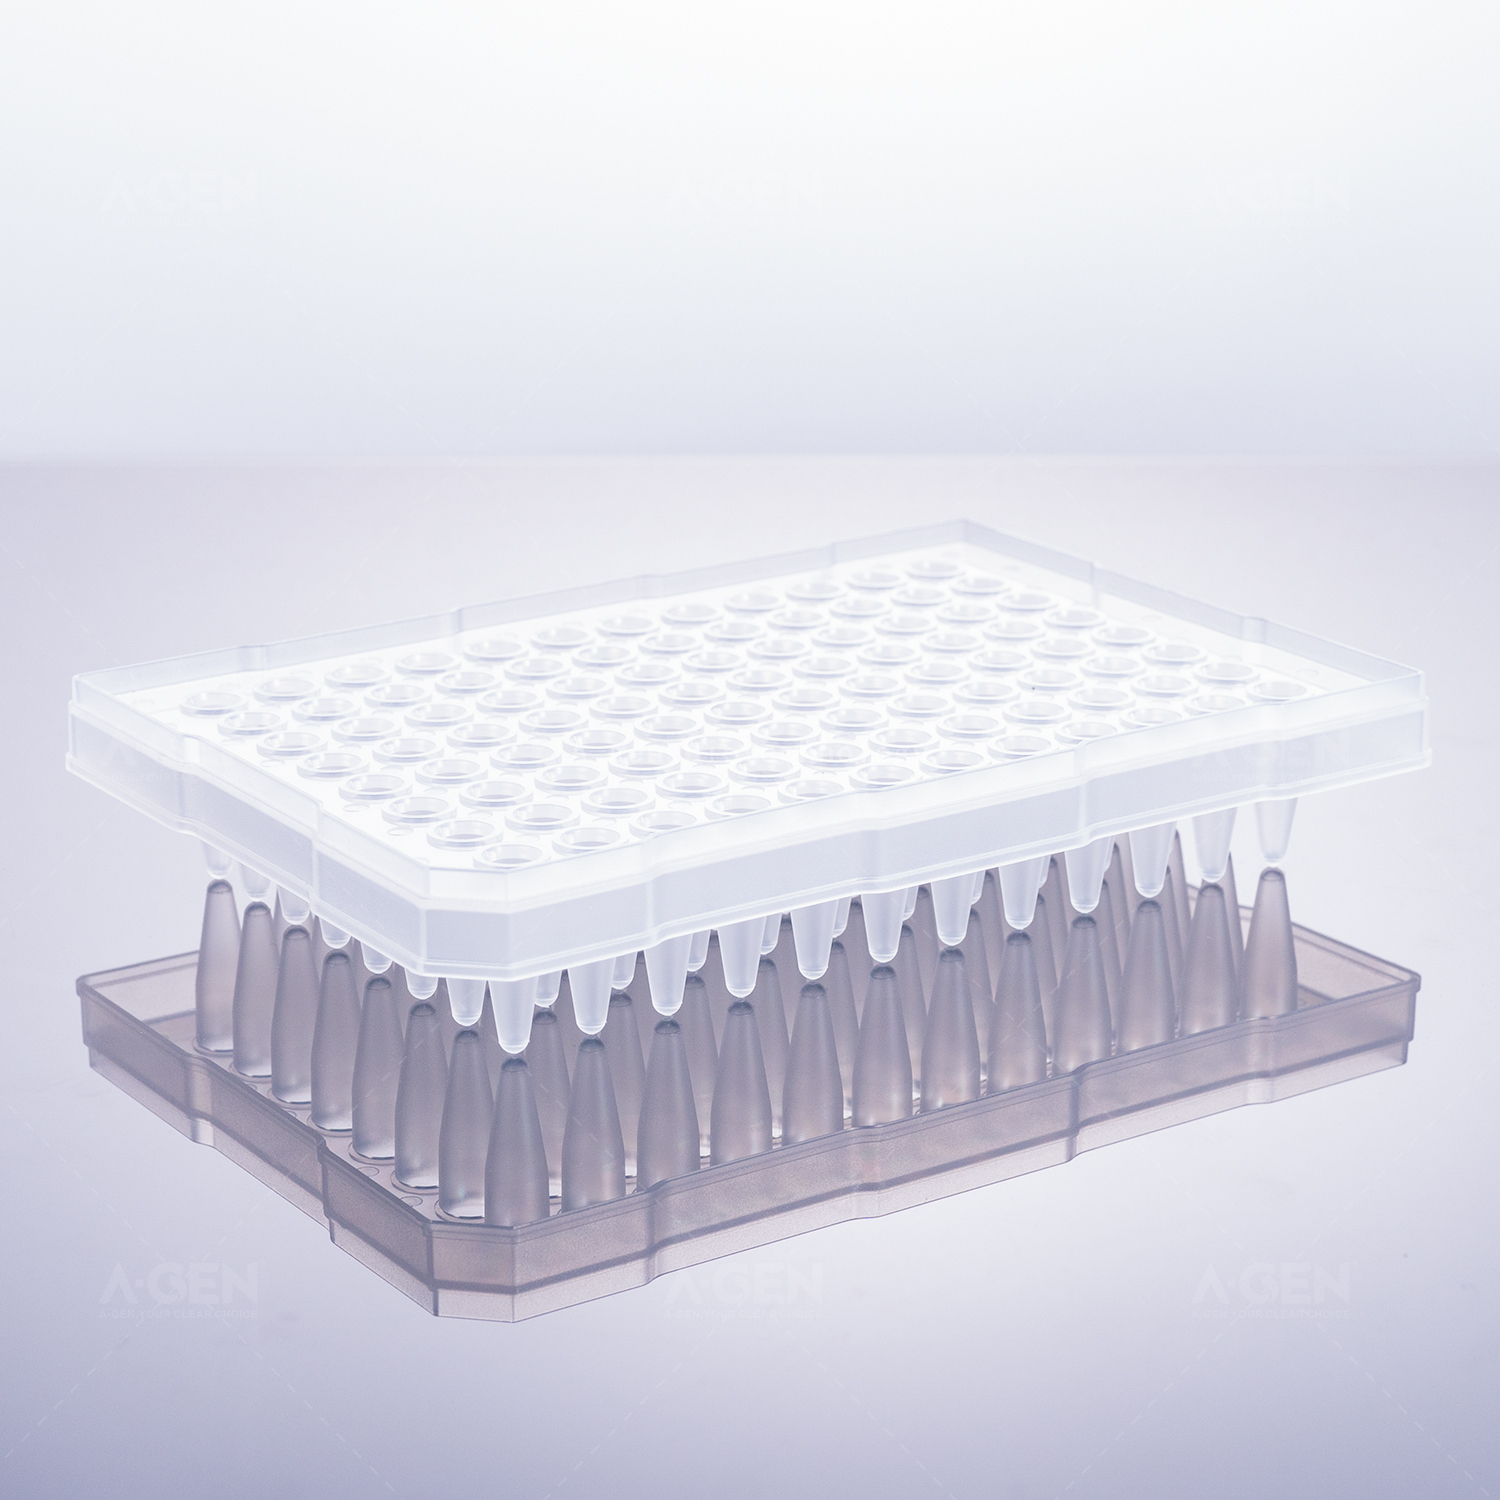 200μL，96孔PCR板，半裙边，标记清晰，磨砂外壳